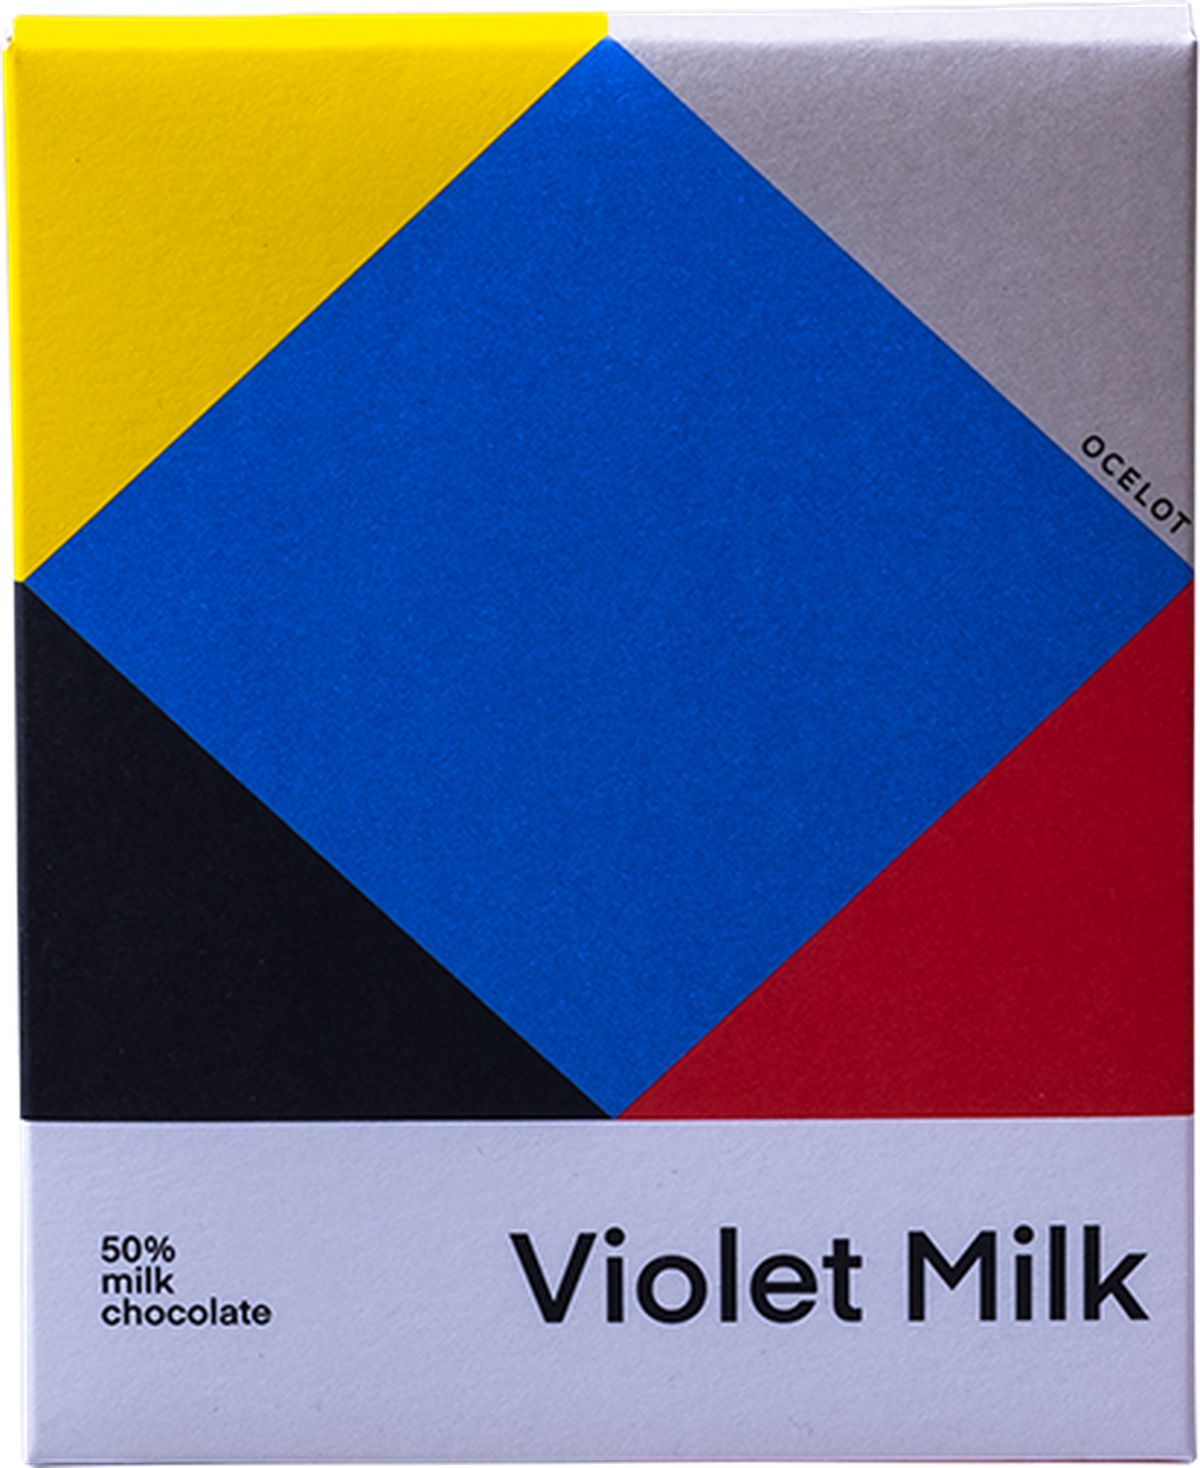 Ocelot - Violet Milk Chocolate